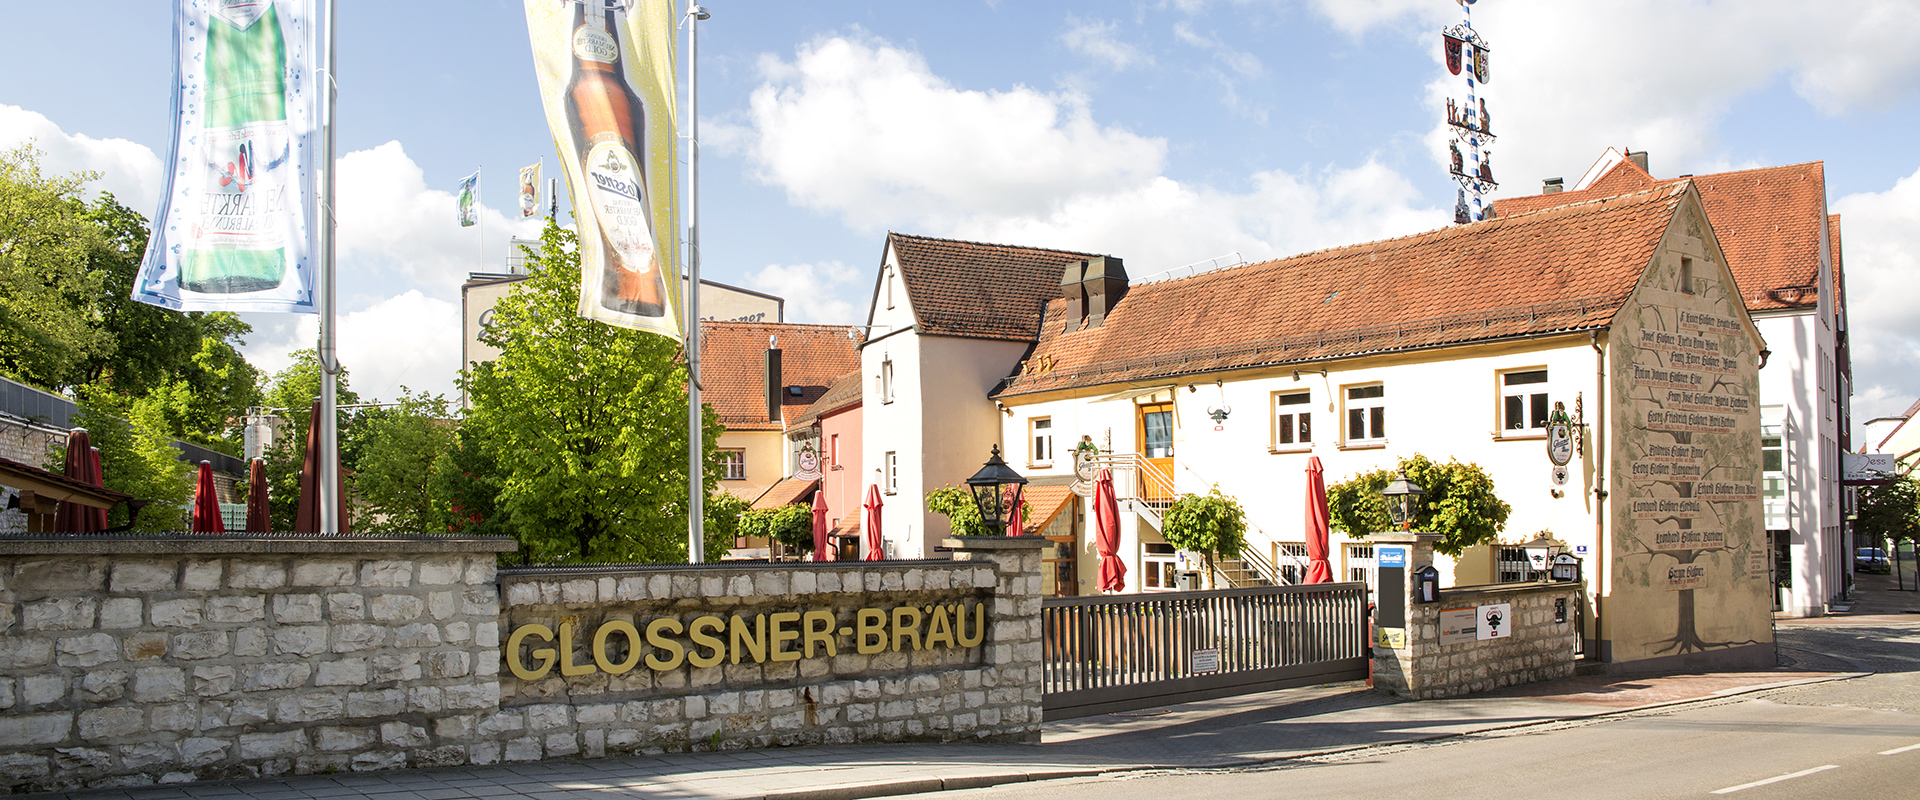 Neumarkter Glossnerbräu - Hochfeiner Biergenuss